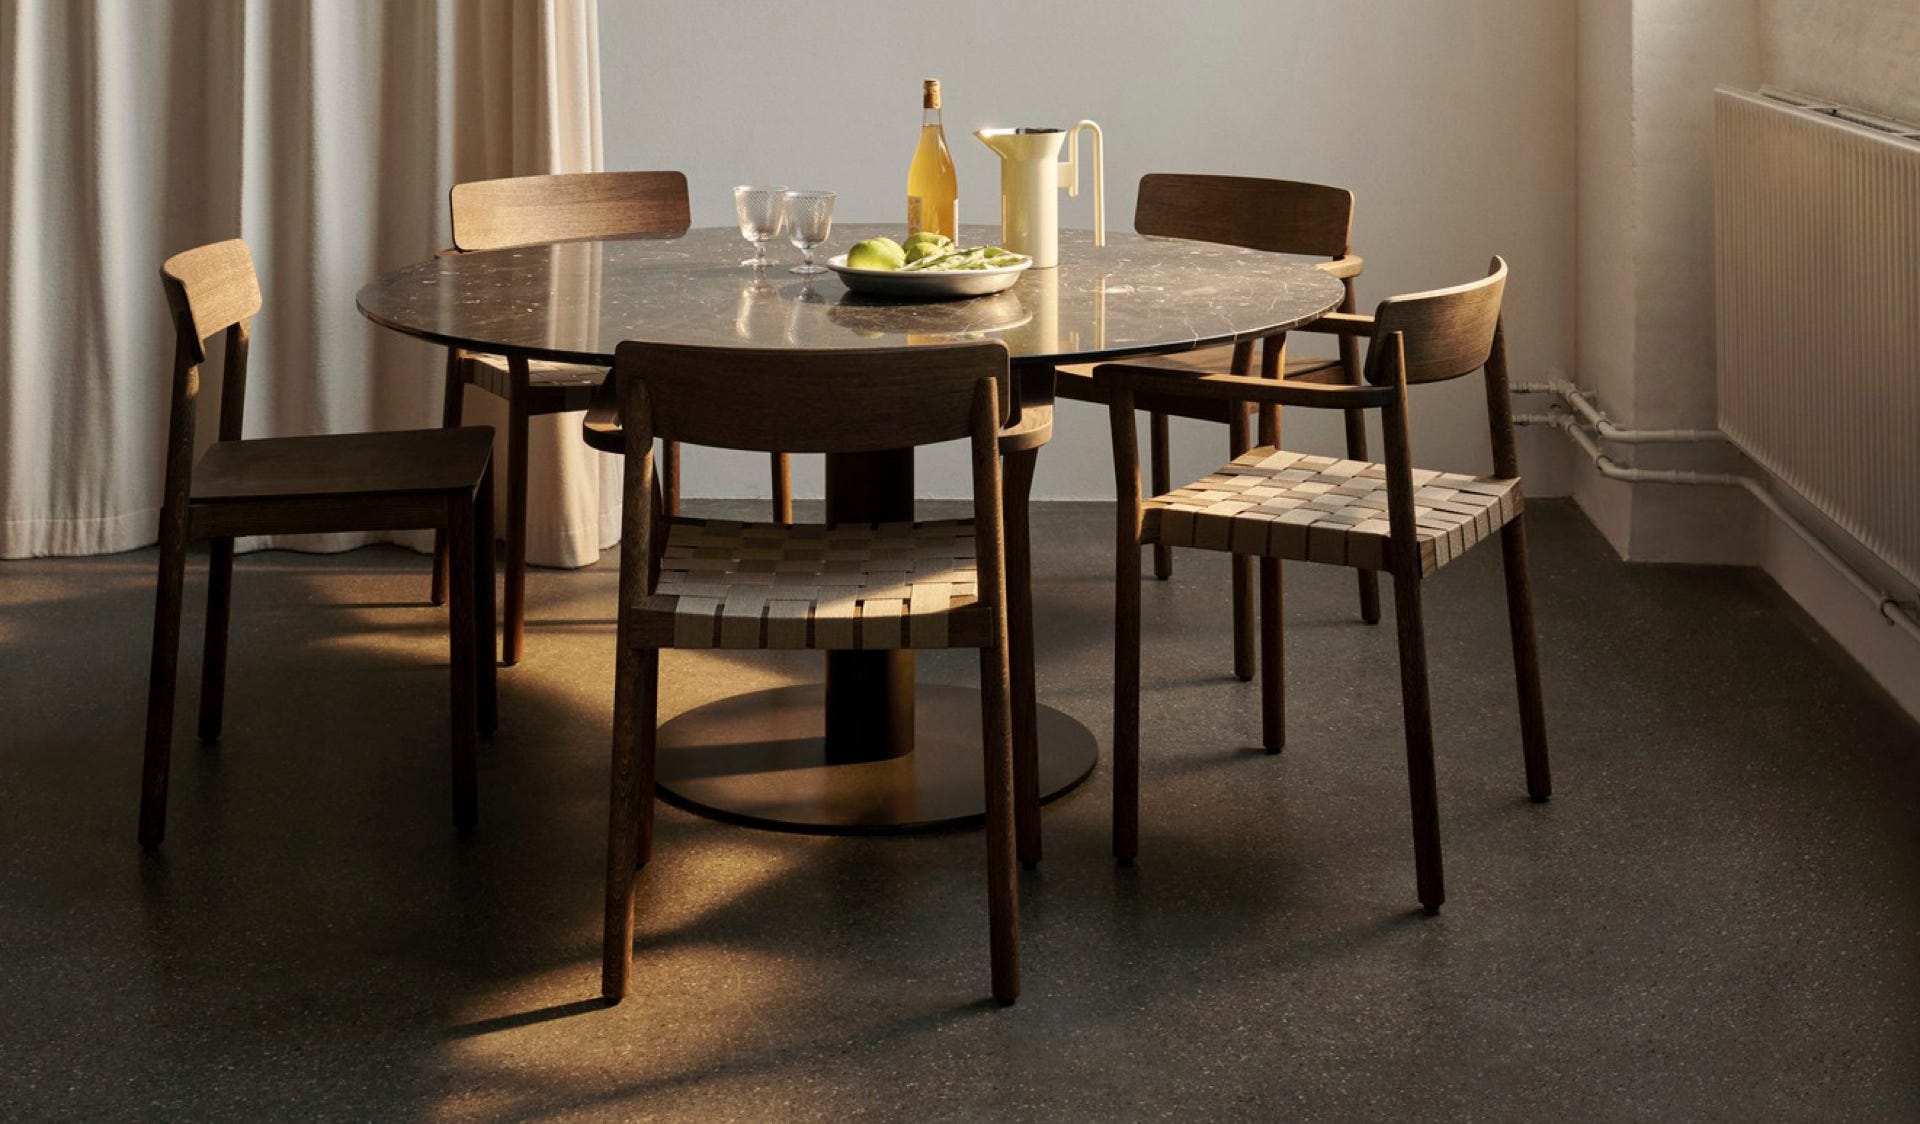 &Tradition – mobilier, luminaires et décoration design danois. E-Shop.